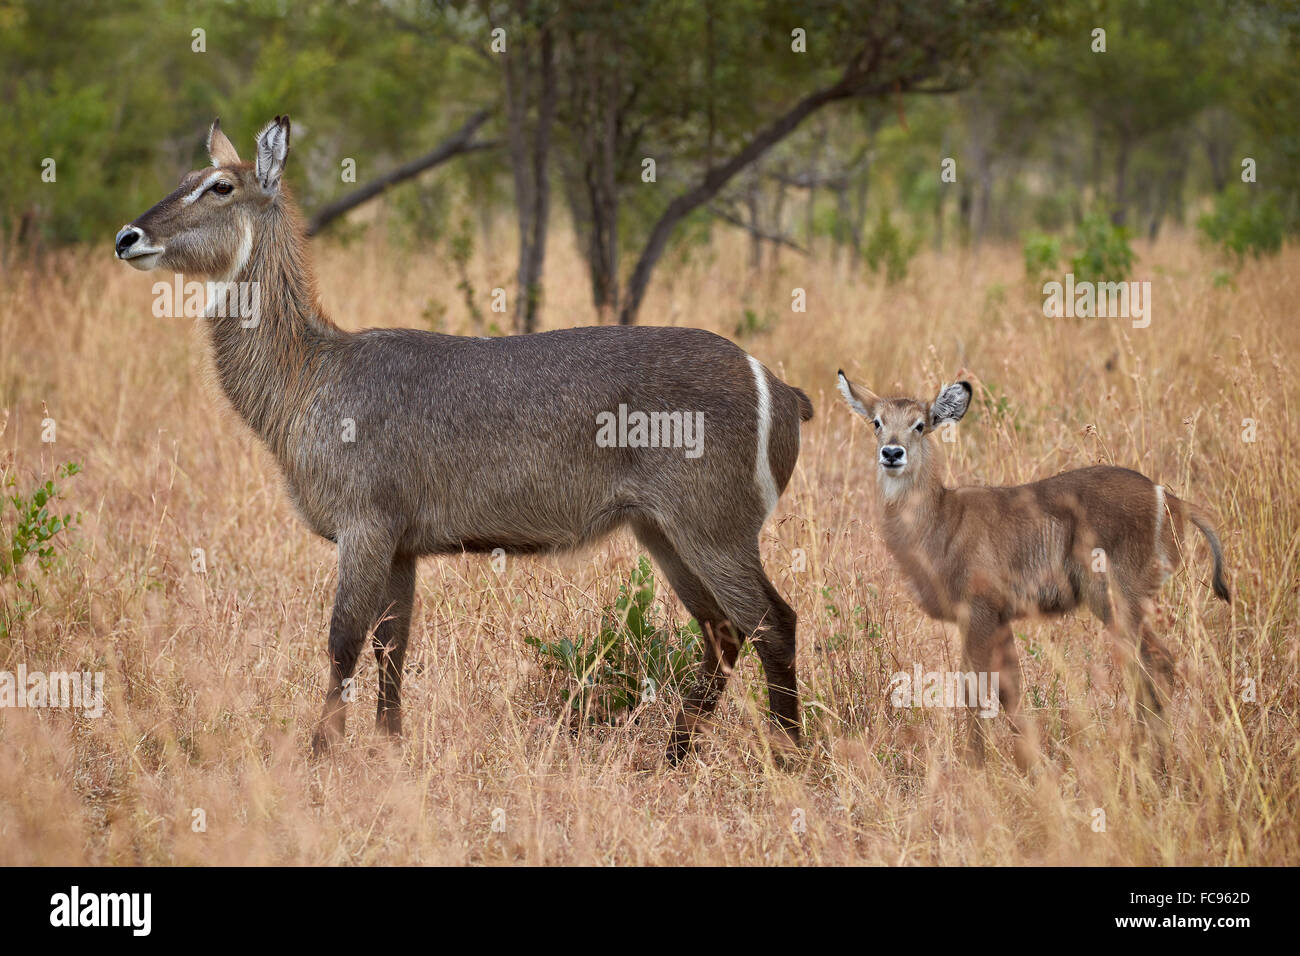 Común (Ellipsen antelope antelope) (Kobus ellipsiprymnus ellipsiprymnus), el DOE y la pantorrilla, el Parque Nacional Kruger, Sudáfrica Foto de stock